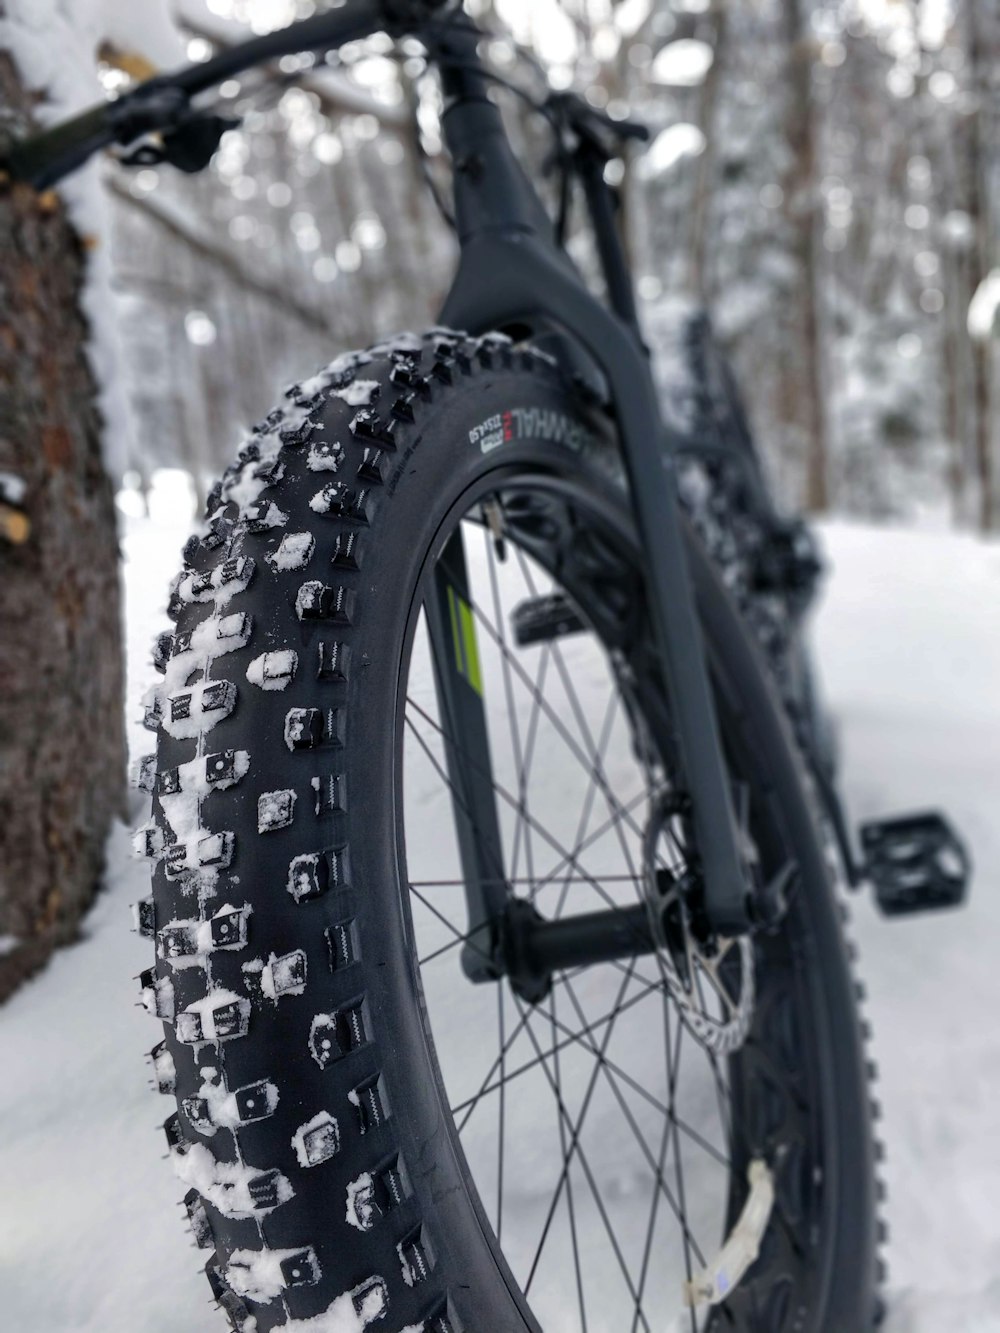 Bicicleta rígida negra apoyada en un árbol con campo cubierto de nieve